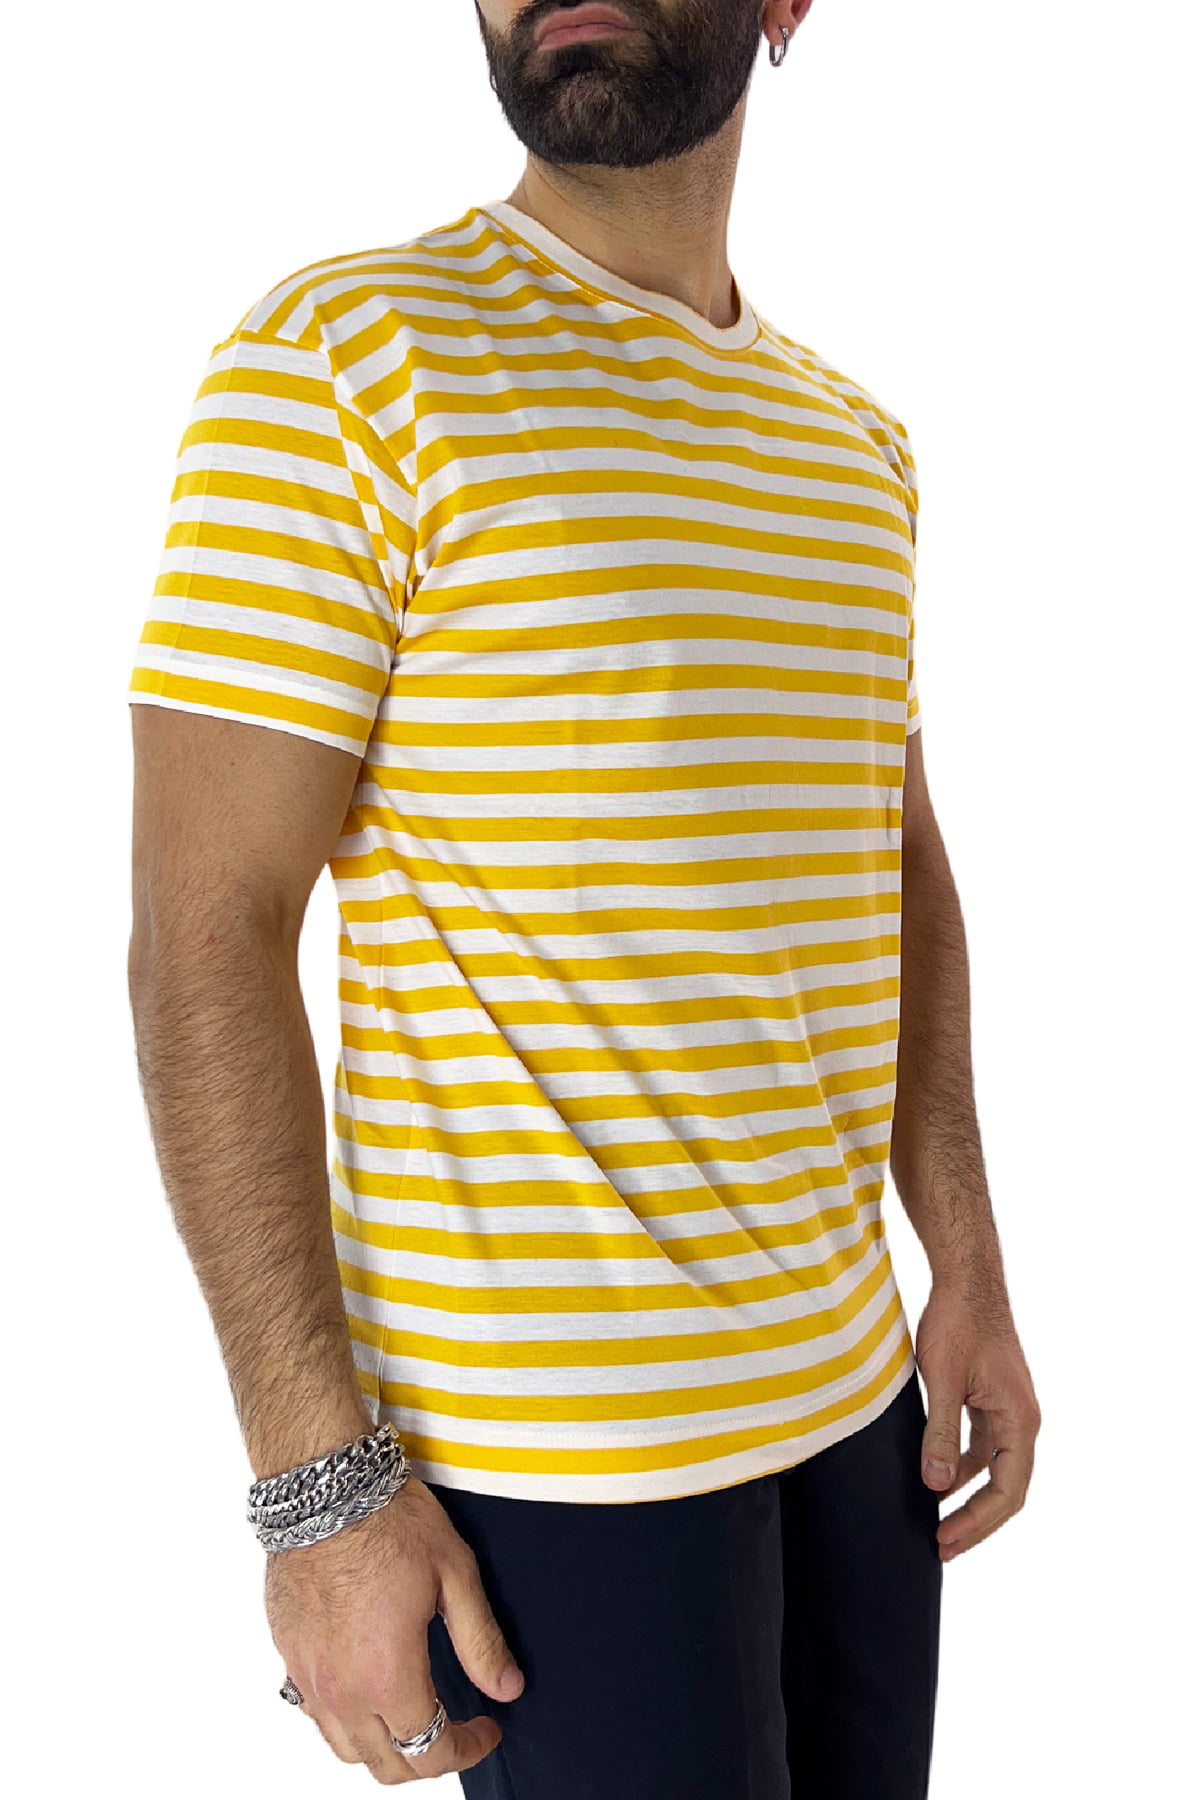 T-shirt girocollo da uomo gialla rigata mezze maniche slim fit made in italy